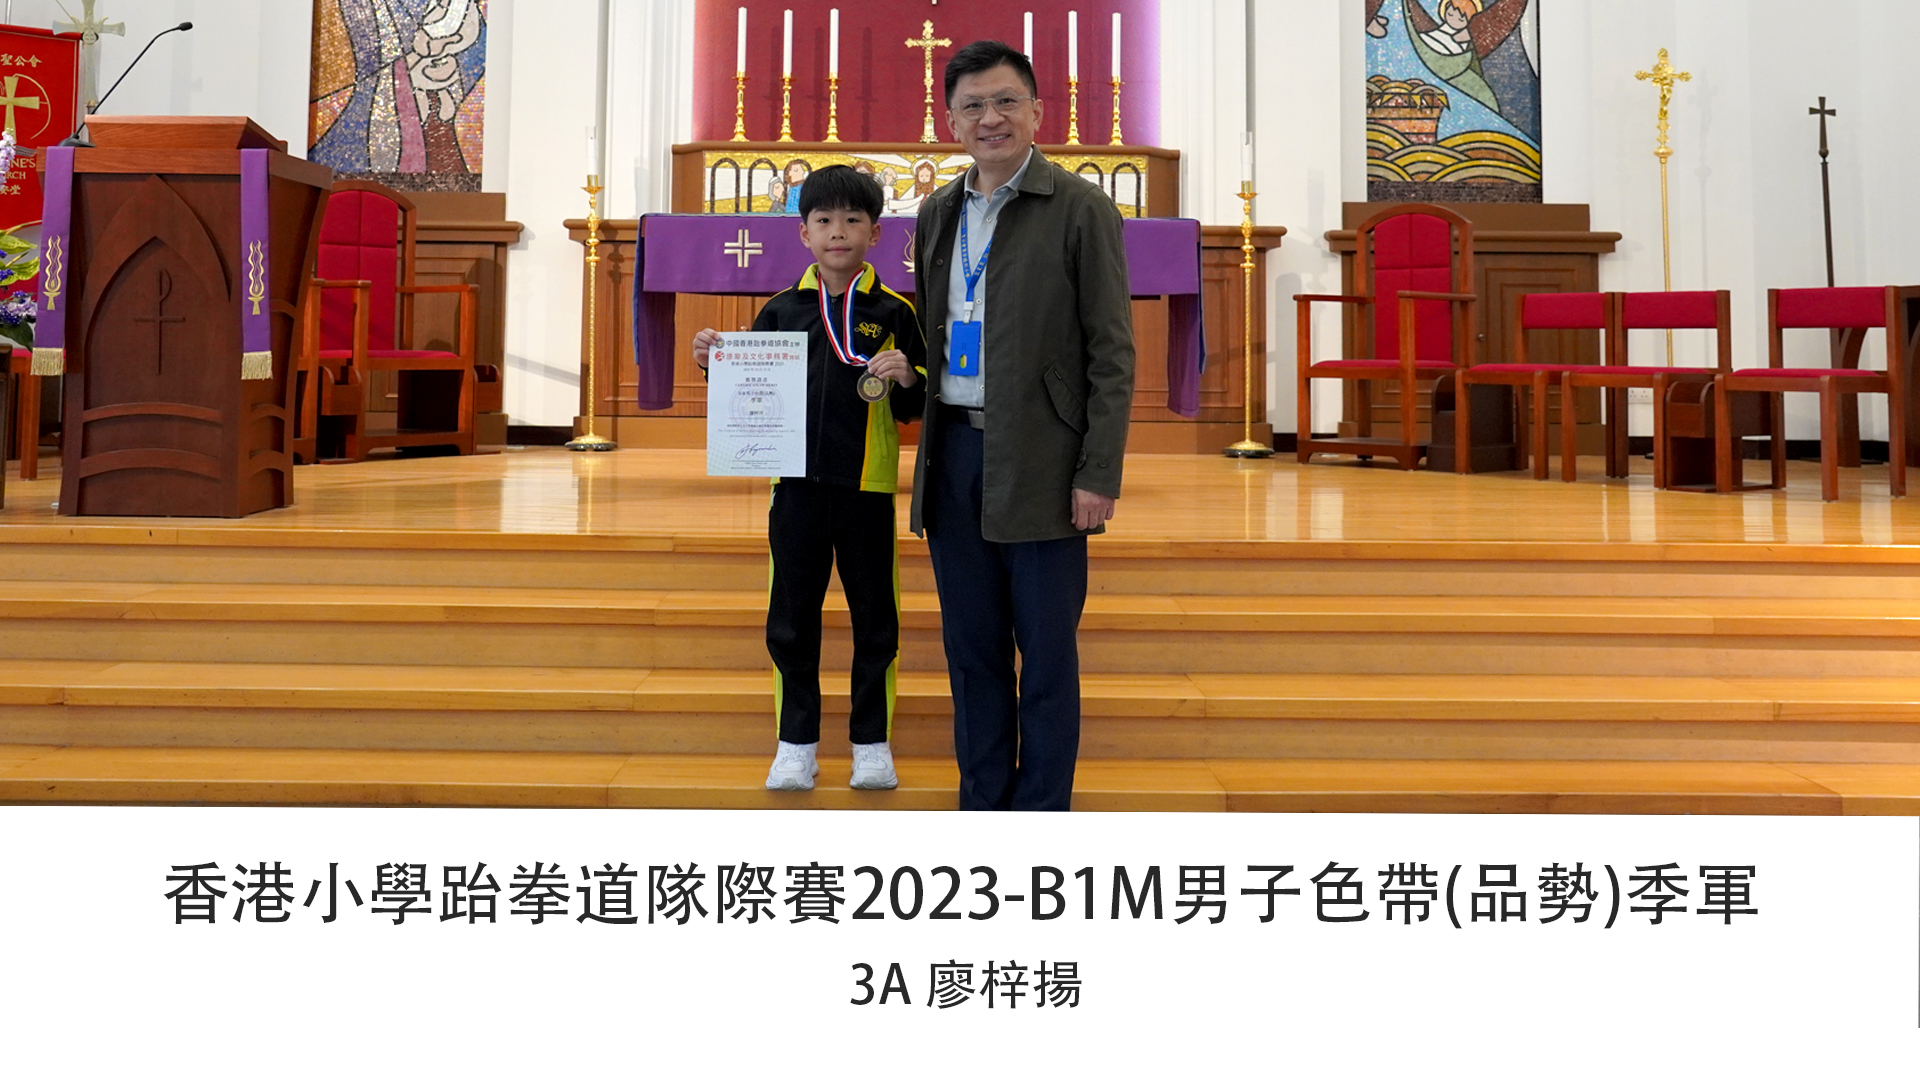 香港小學跆拳道隊際賽2023---B1M男子色帶(品勢)季軍